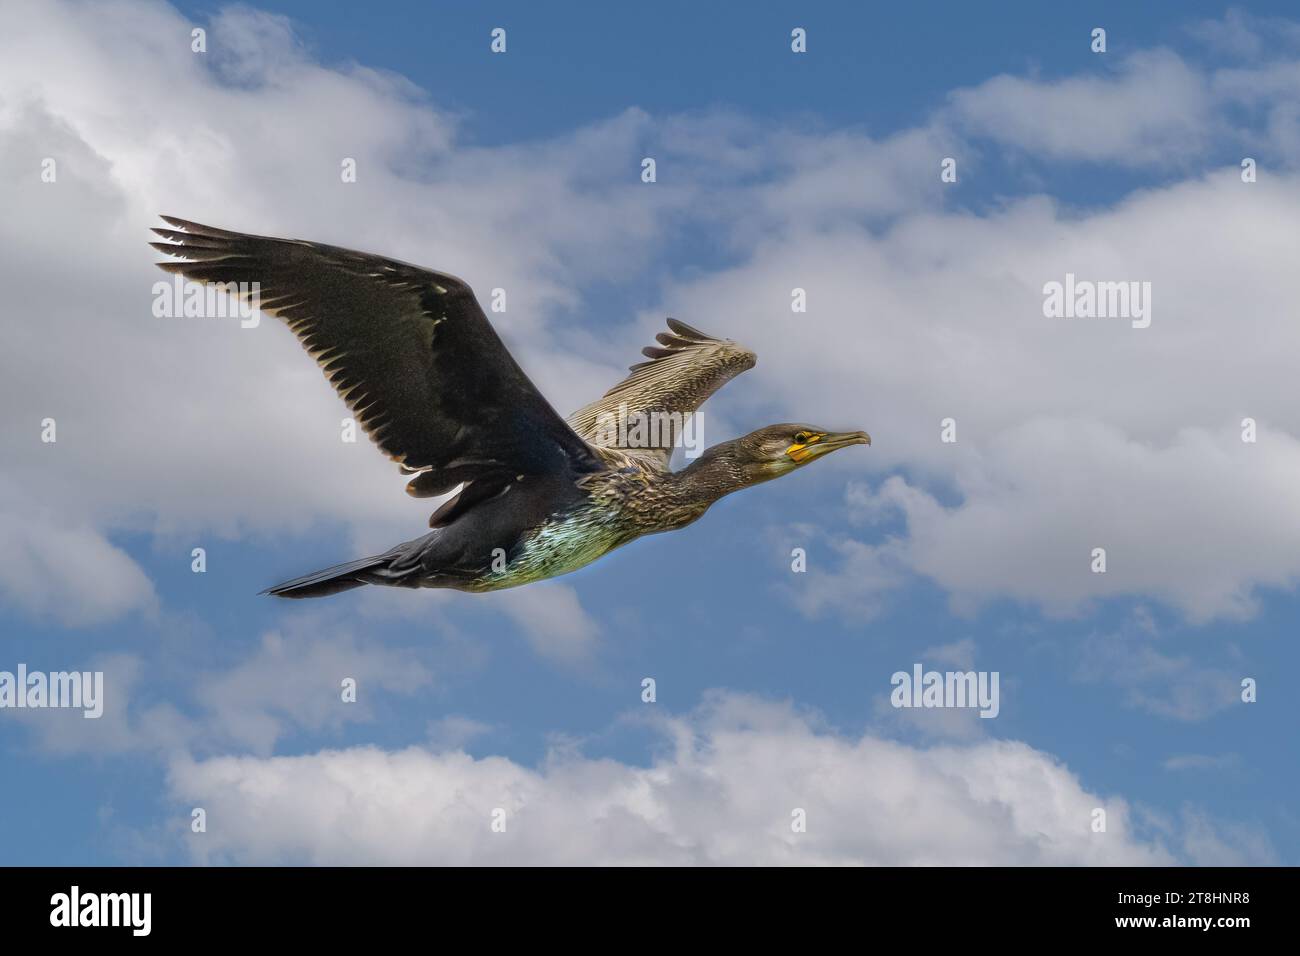 Nahaufnahme eines hoch aufragenden Kormorans, Phalacrocorax carbo, mit schwarzem Gefieder und goldenem Schimmer über den Flügelrändern gegen einen blauen Himmel mit Cumu Stockfoto